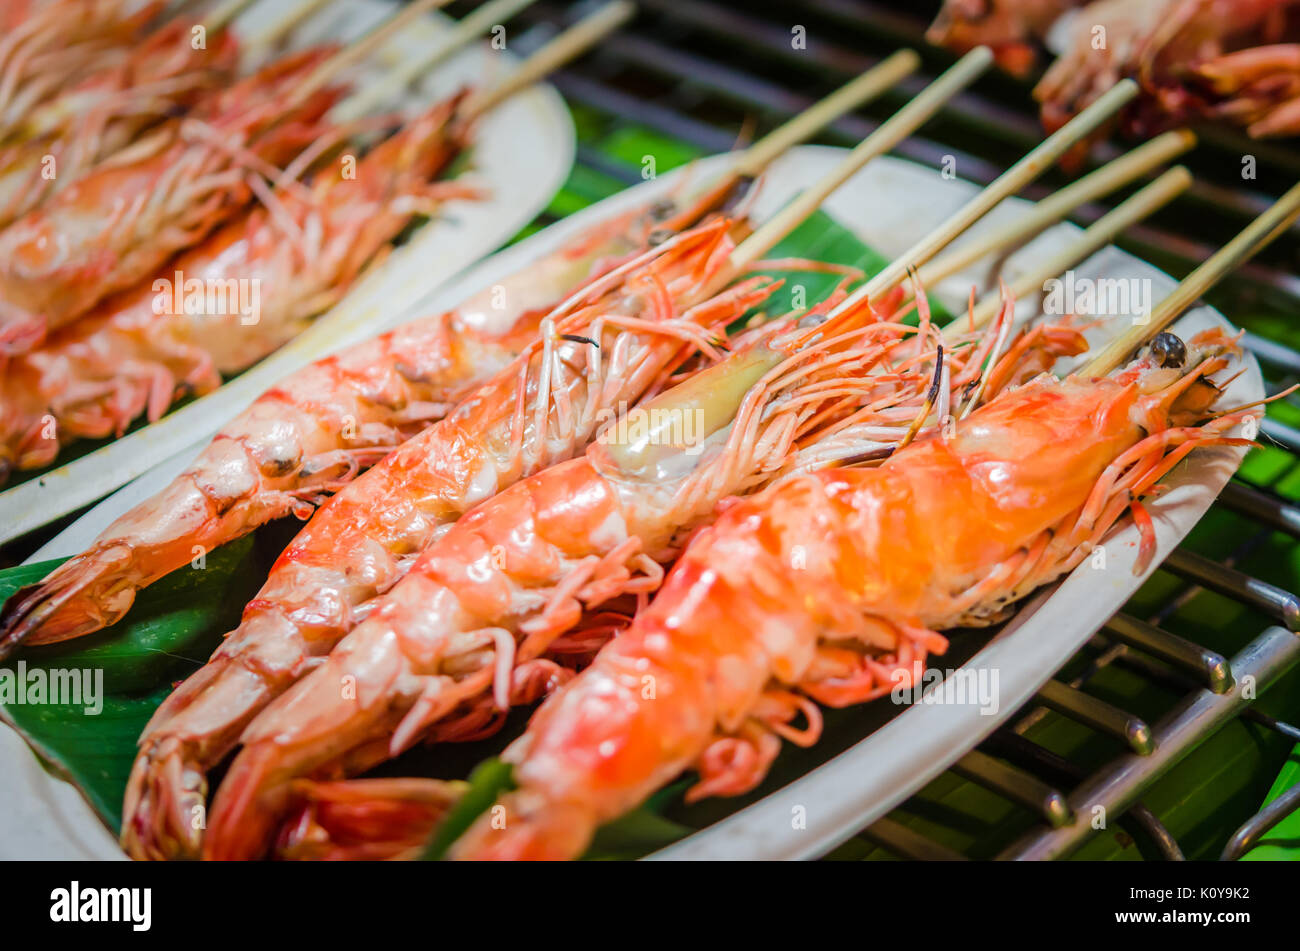 many-grilled-red-king-size-shrimps-K0Y9K2.jpg